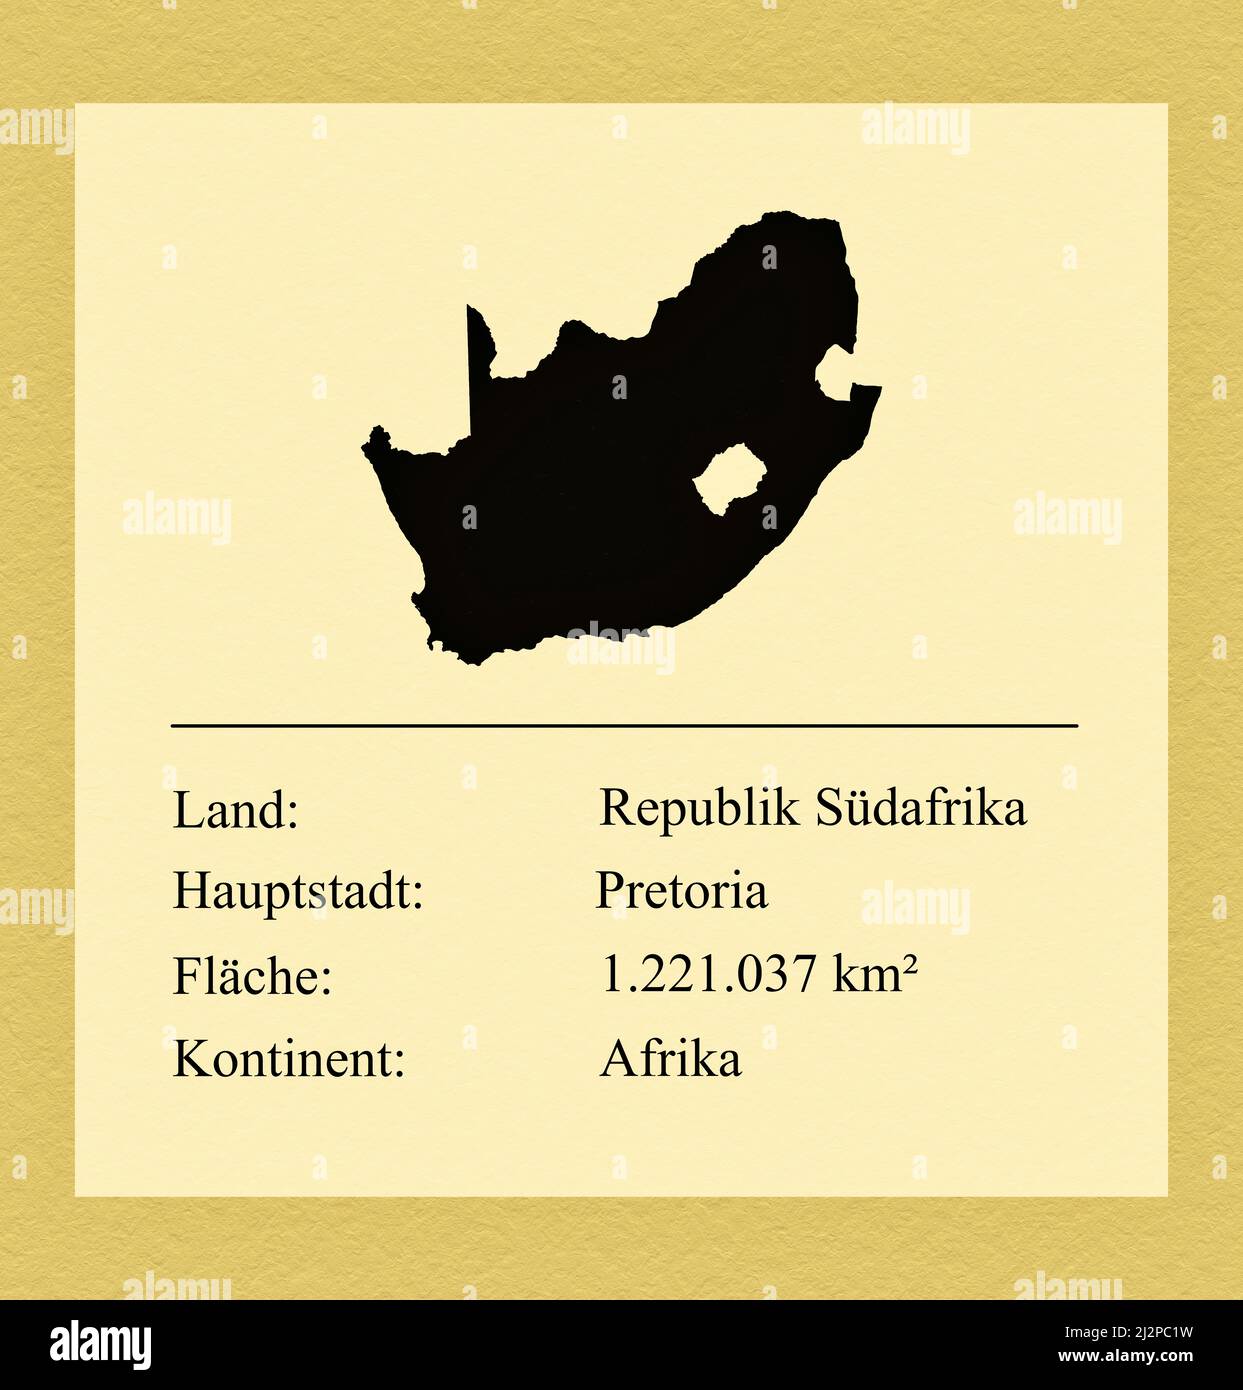 Umrisse des Landes Republik Südafrika, darunter ein kleiner Steckbrief mit Ländernamen, Hauptstadt, Fläche und Kontinent Stock Photo